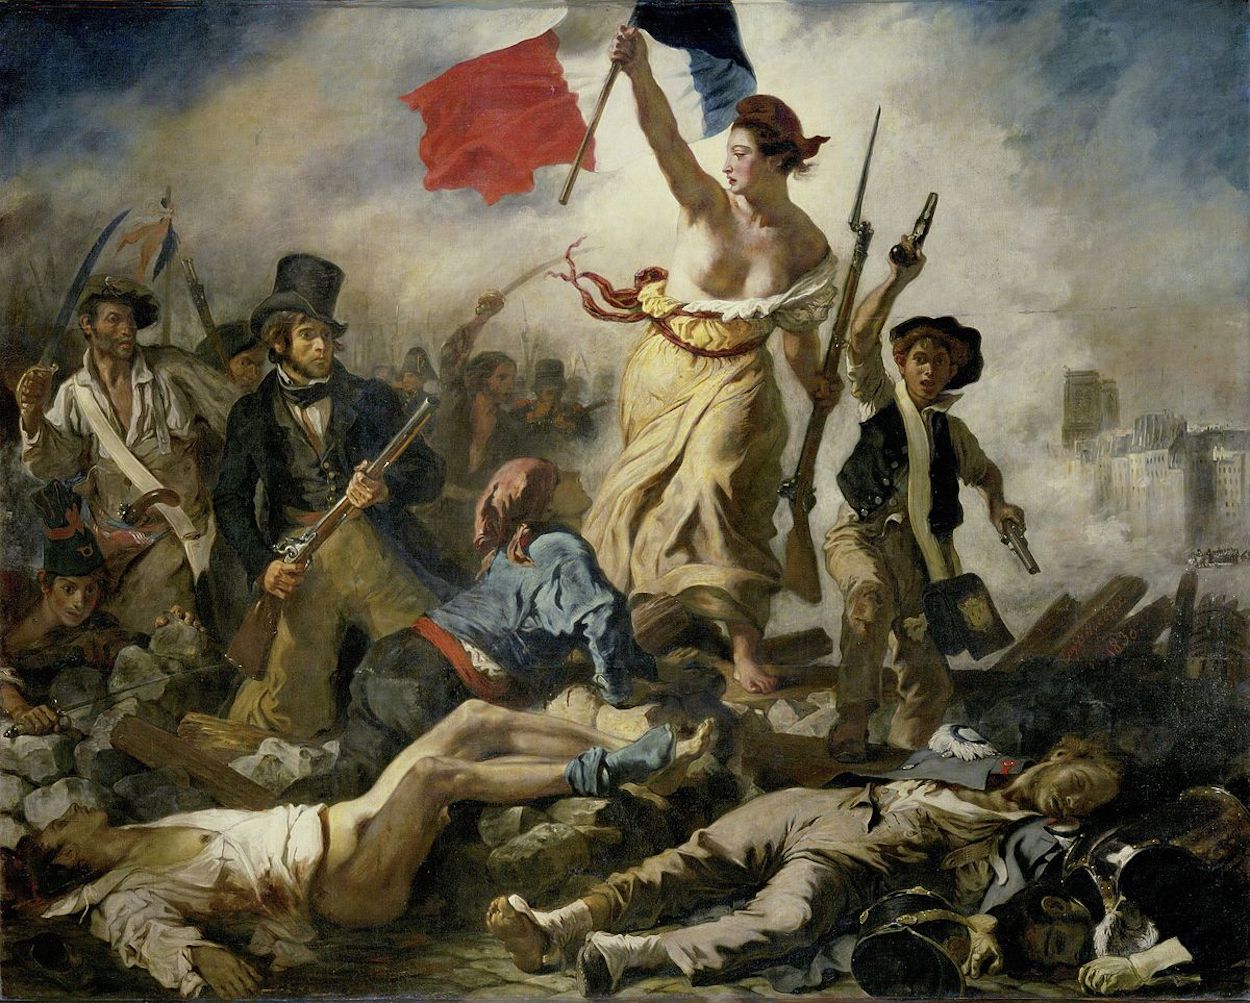 Liberty Leading The People by Eugène Delacroix - 1830 - 260 cm x 325 cm Musée du Louvre